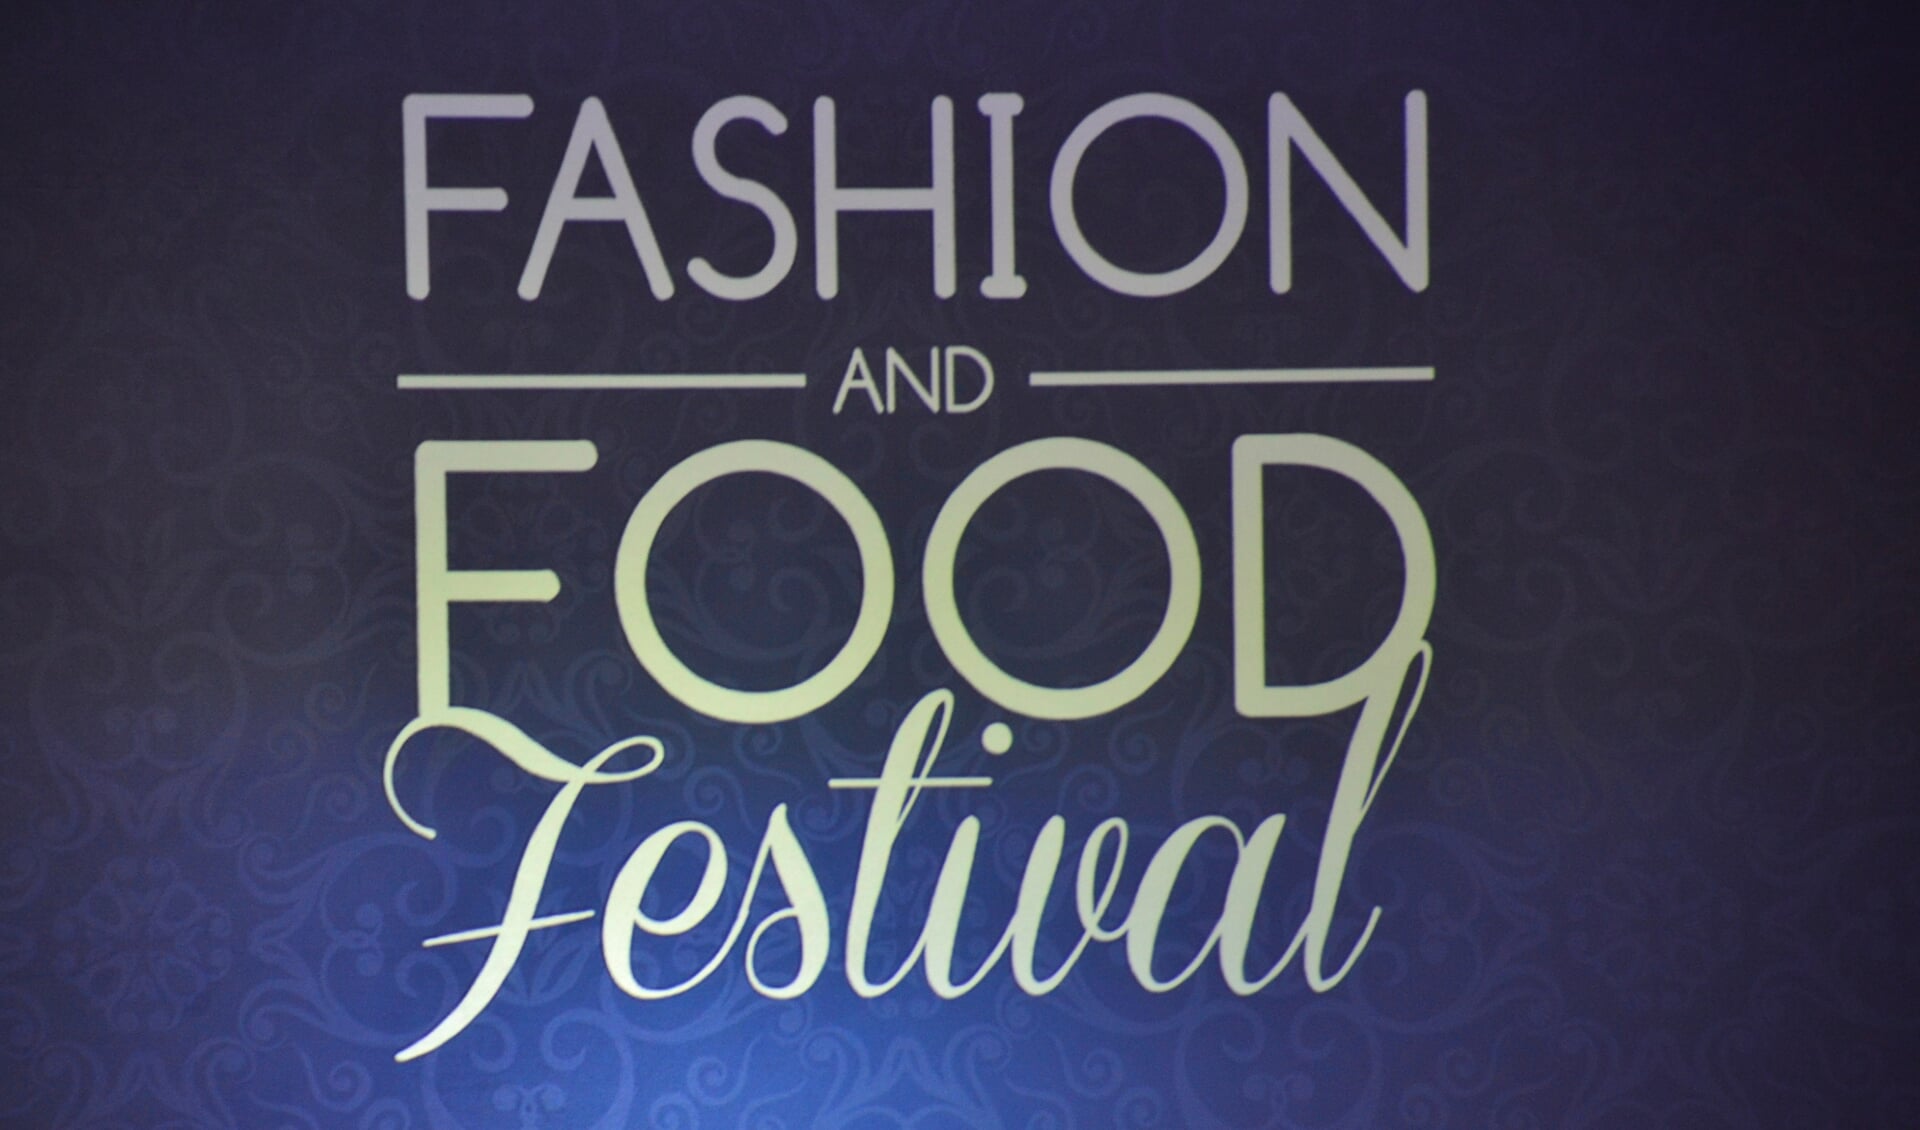 Fashion and Food Festival